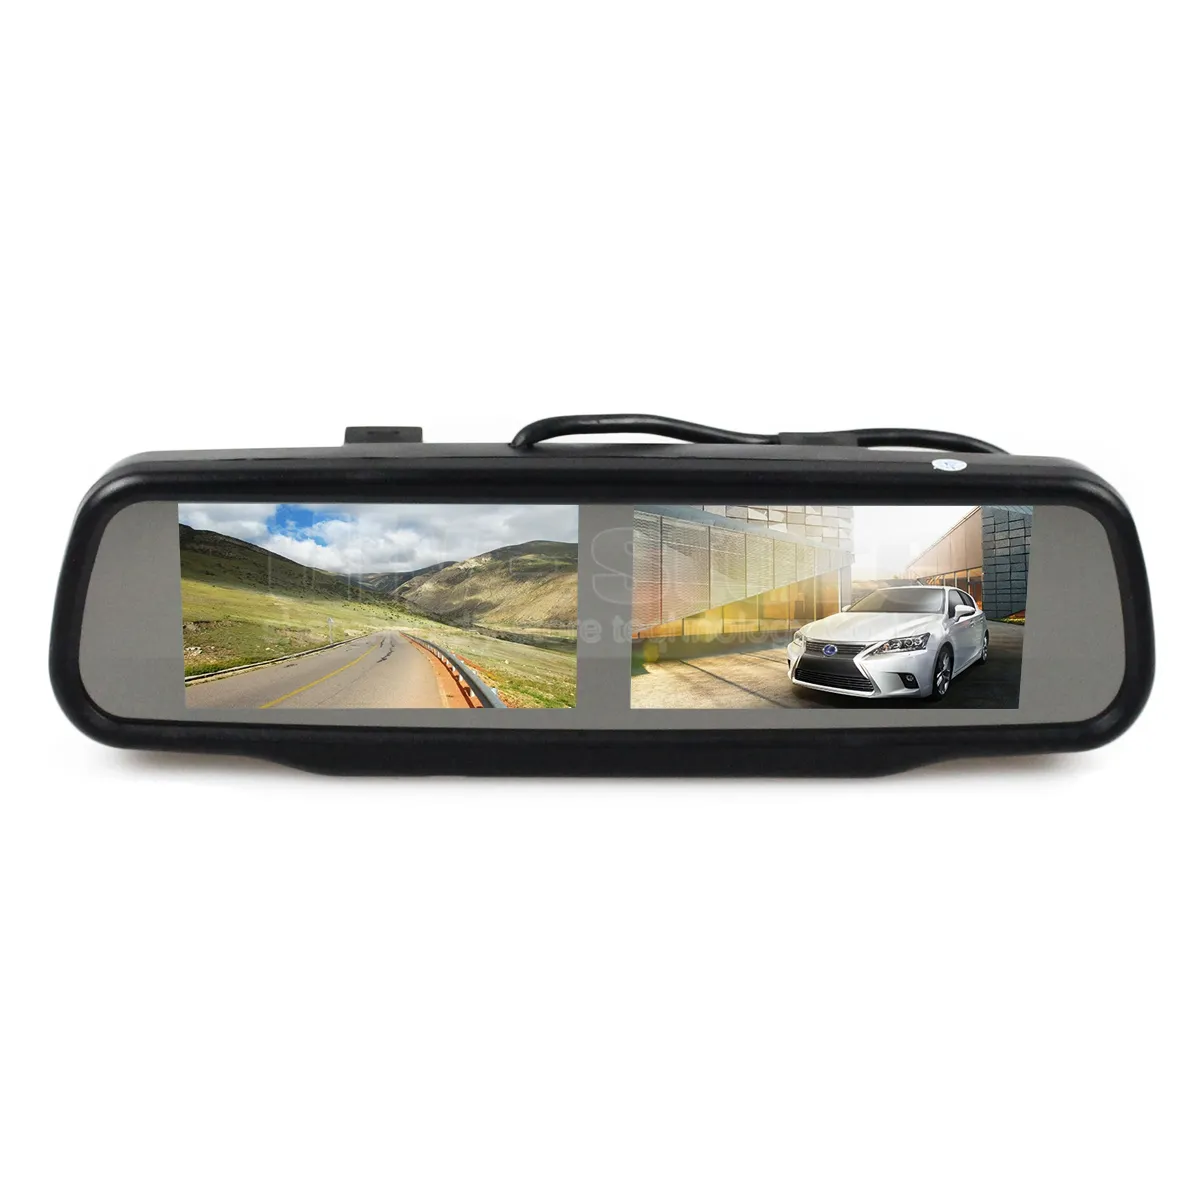 Двойной монитор зеркала автомобиля монитора вида сзади 4,3 дюймов для Dvd видео-плеер обращая резервную камеру автомобиля